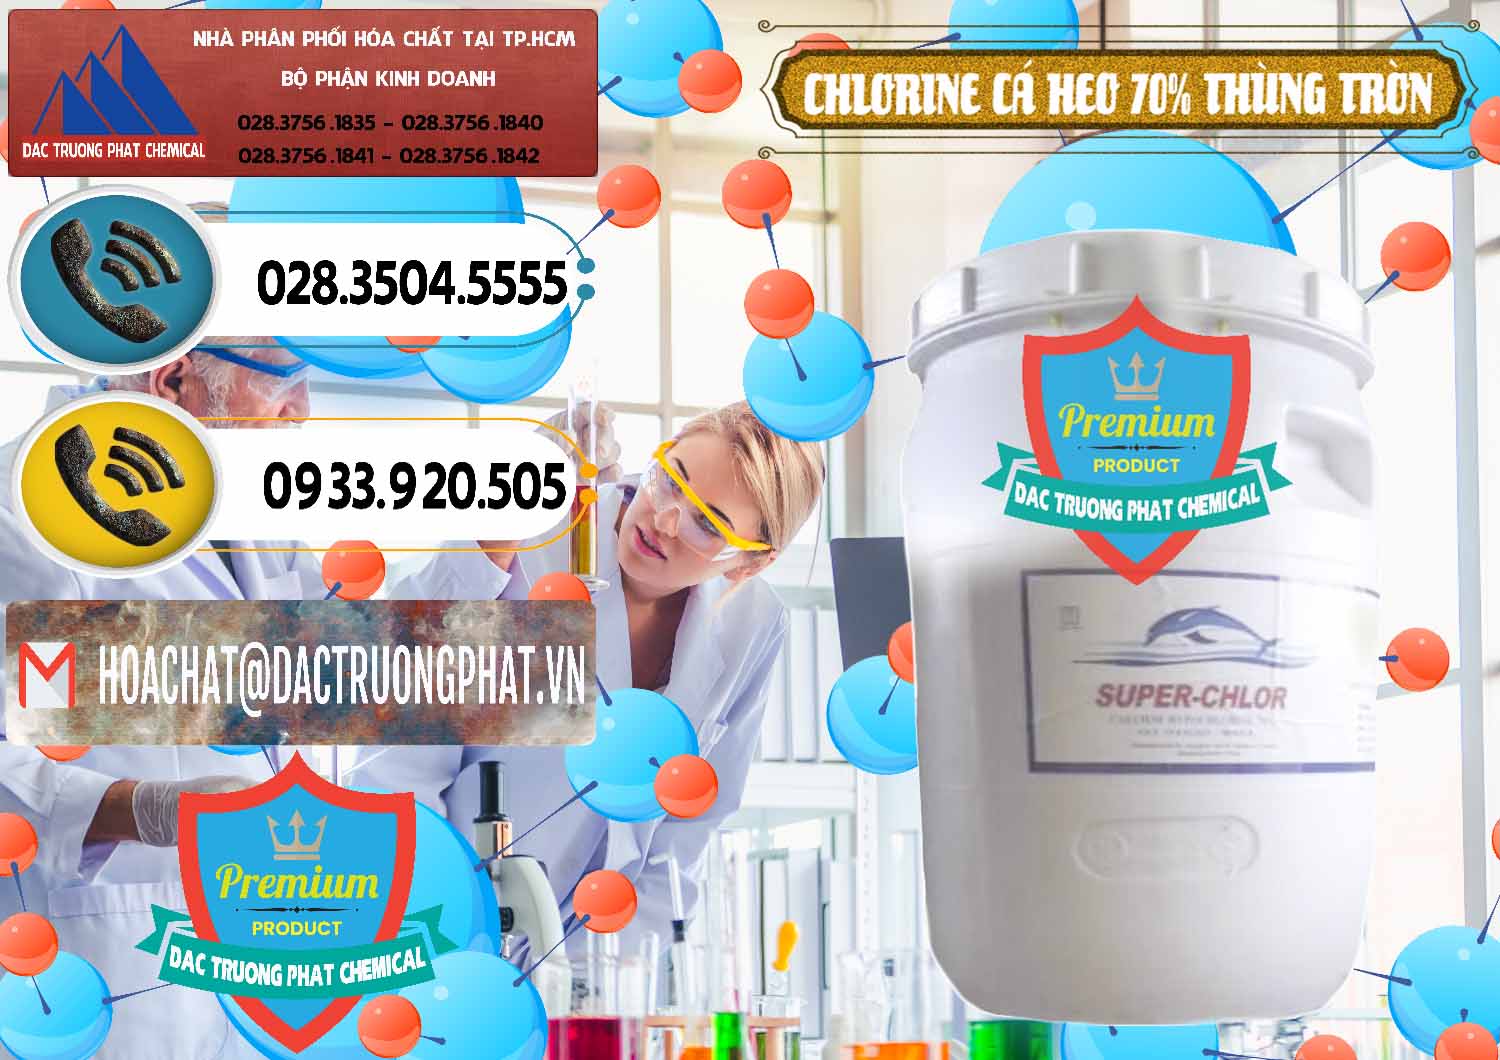 Bán & cung ứng Clorin - Chlorine Cá Heo 70% Super Chlor Thùng Tròn Nắp Trắng Trung Quốc China - 0239 - Chuyên phân phối ( kinh doanh ) hóa chất tại TP.HCM - hoachatdetnhuom.vn